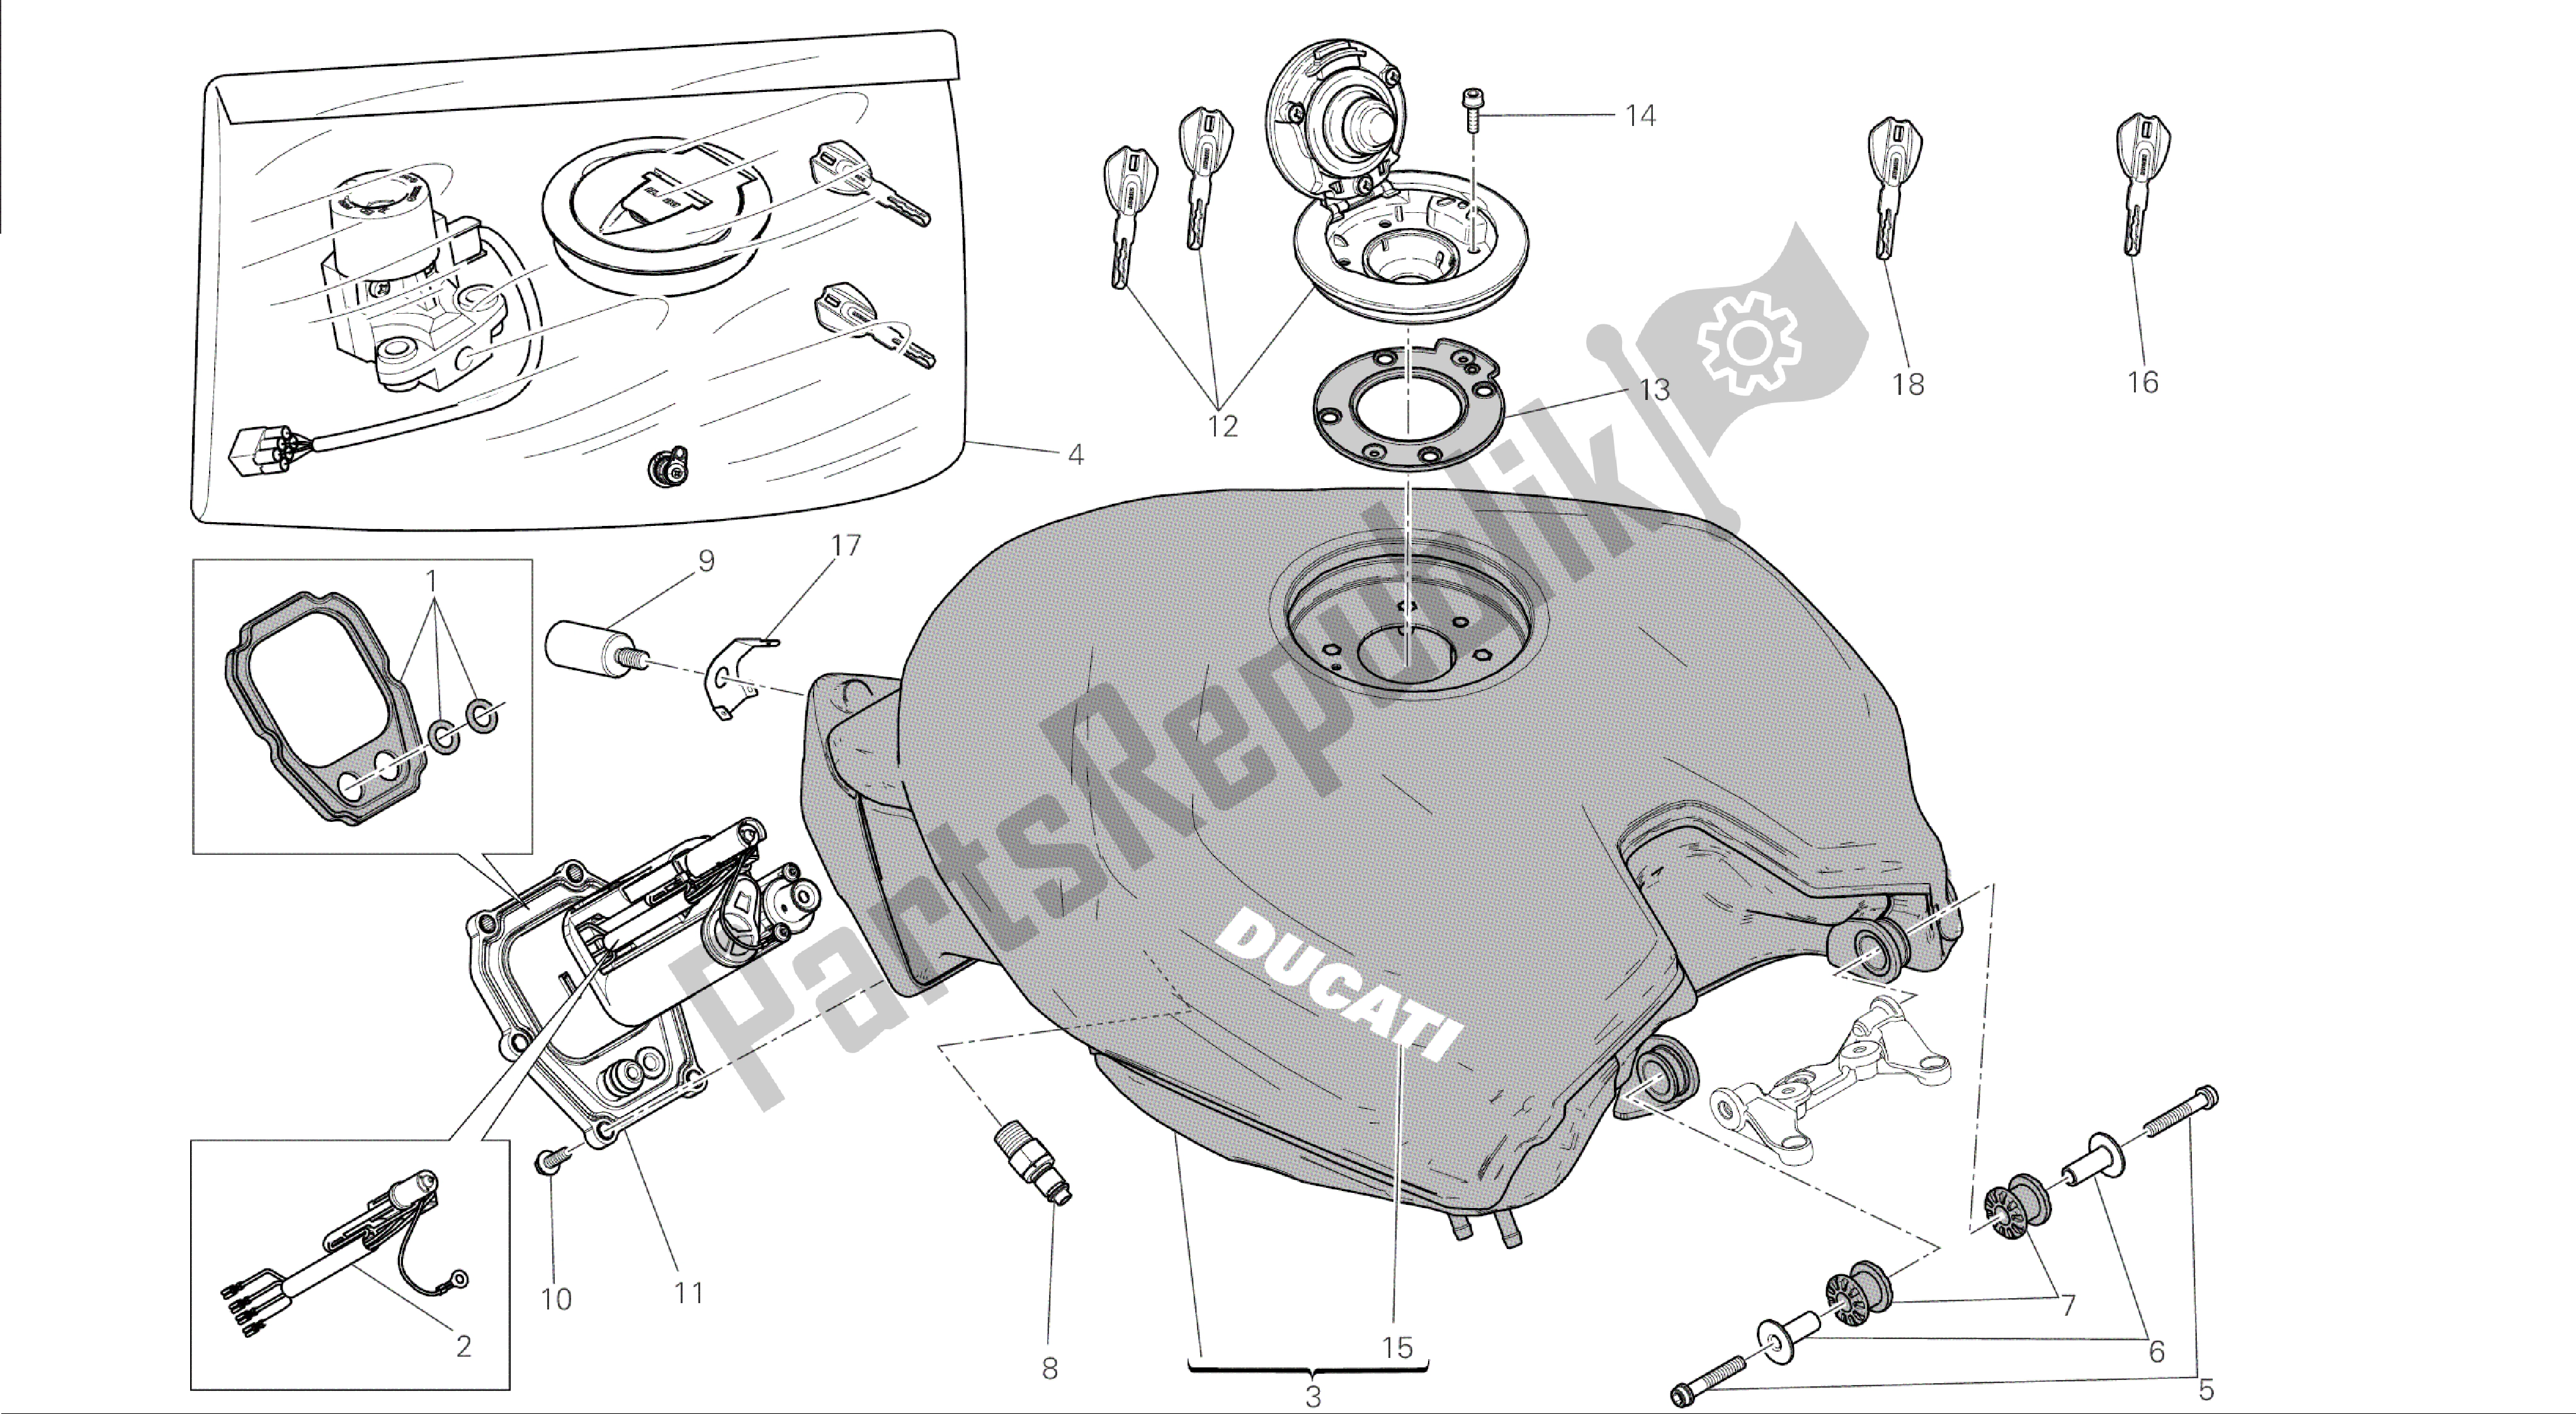 Todas las partes para Dibujo 032 - Cuadro De Grupo Tanque [mod: 1199 Abs; Xst: Chn] de Ducati Panigale ABS 1199 2014